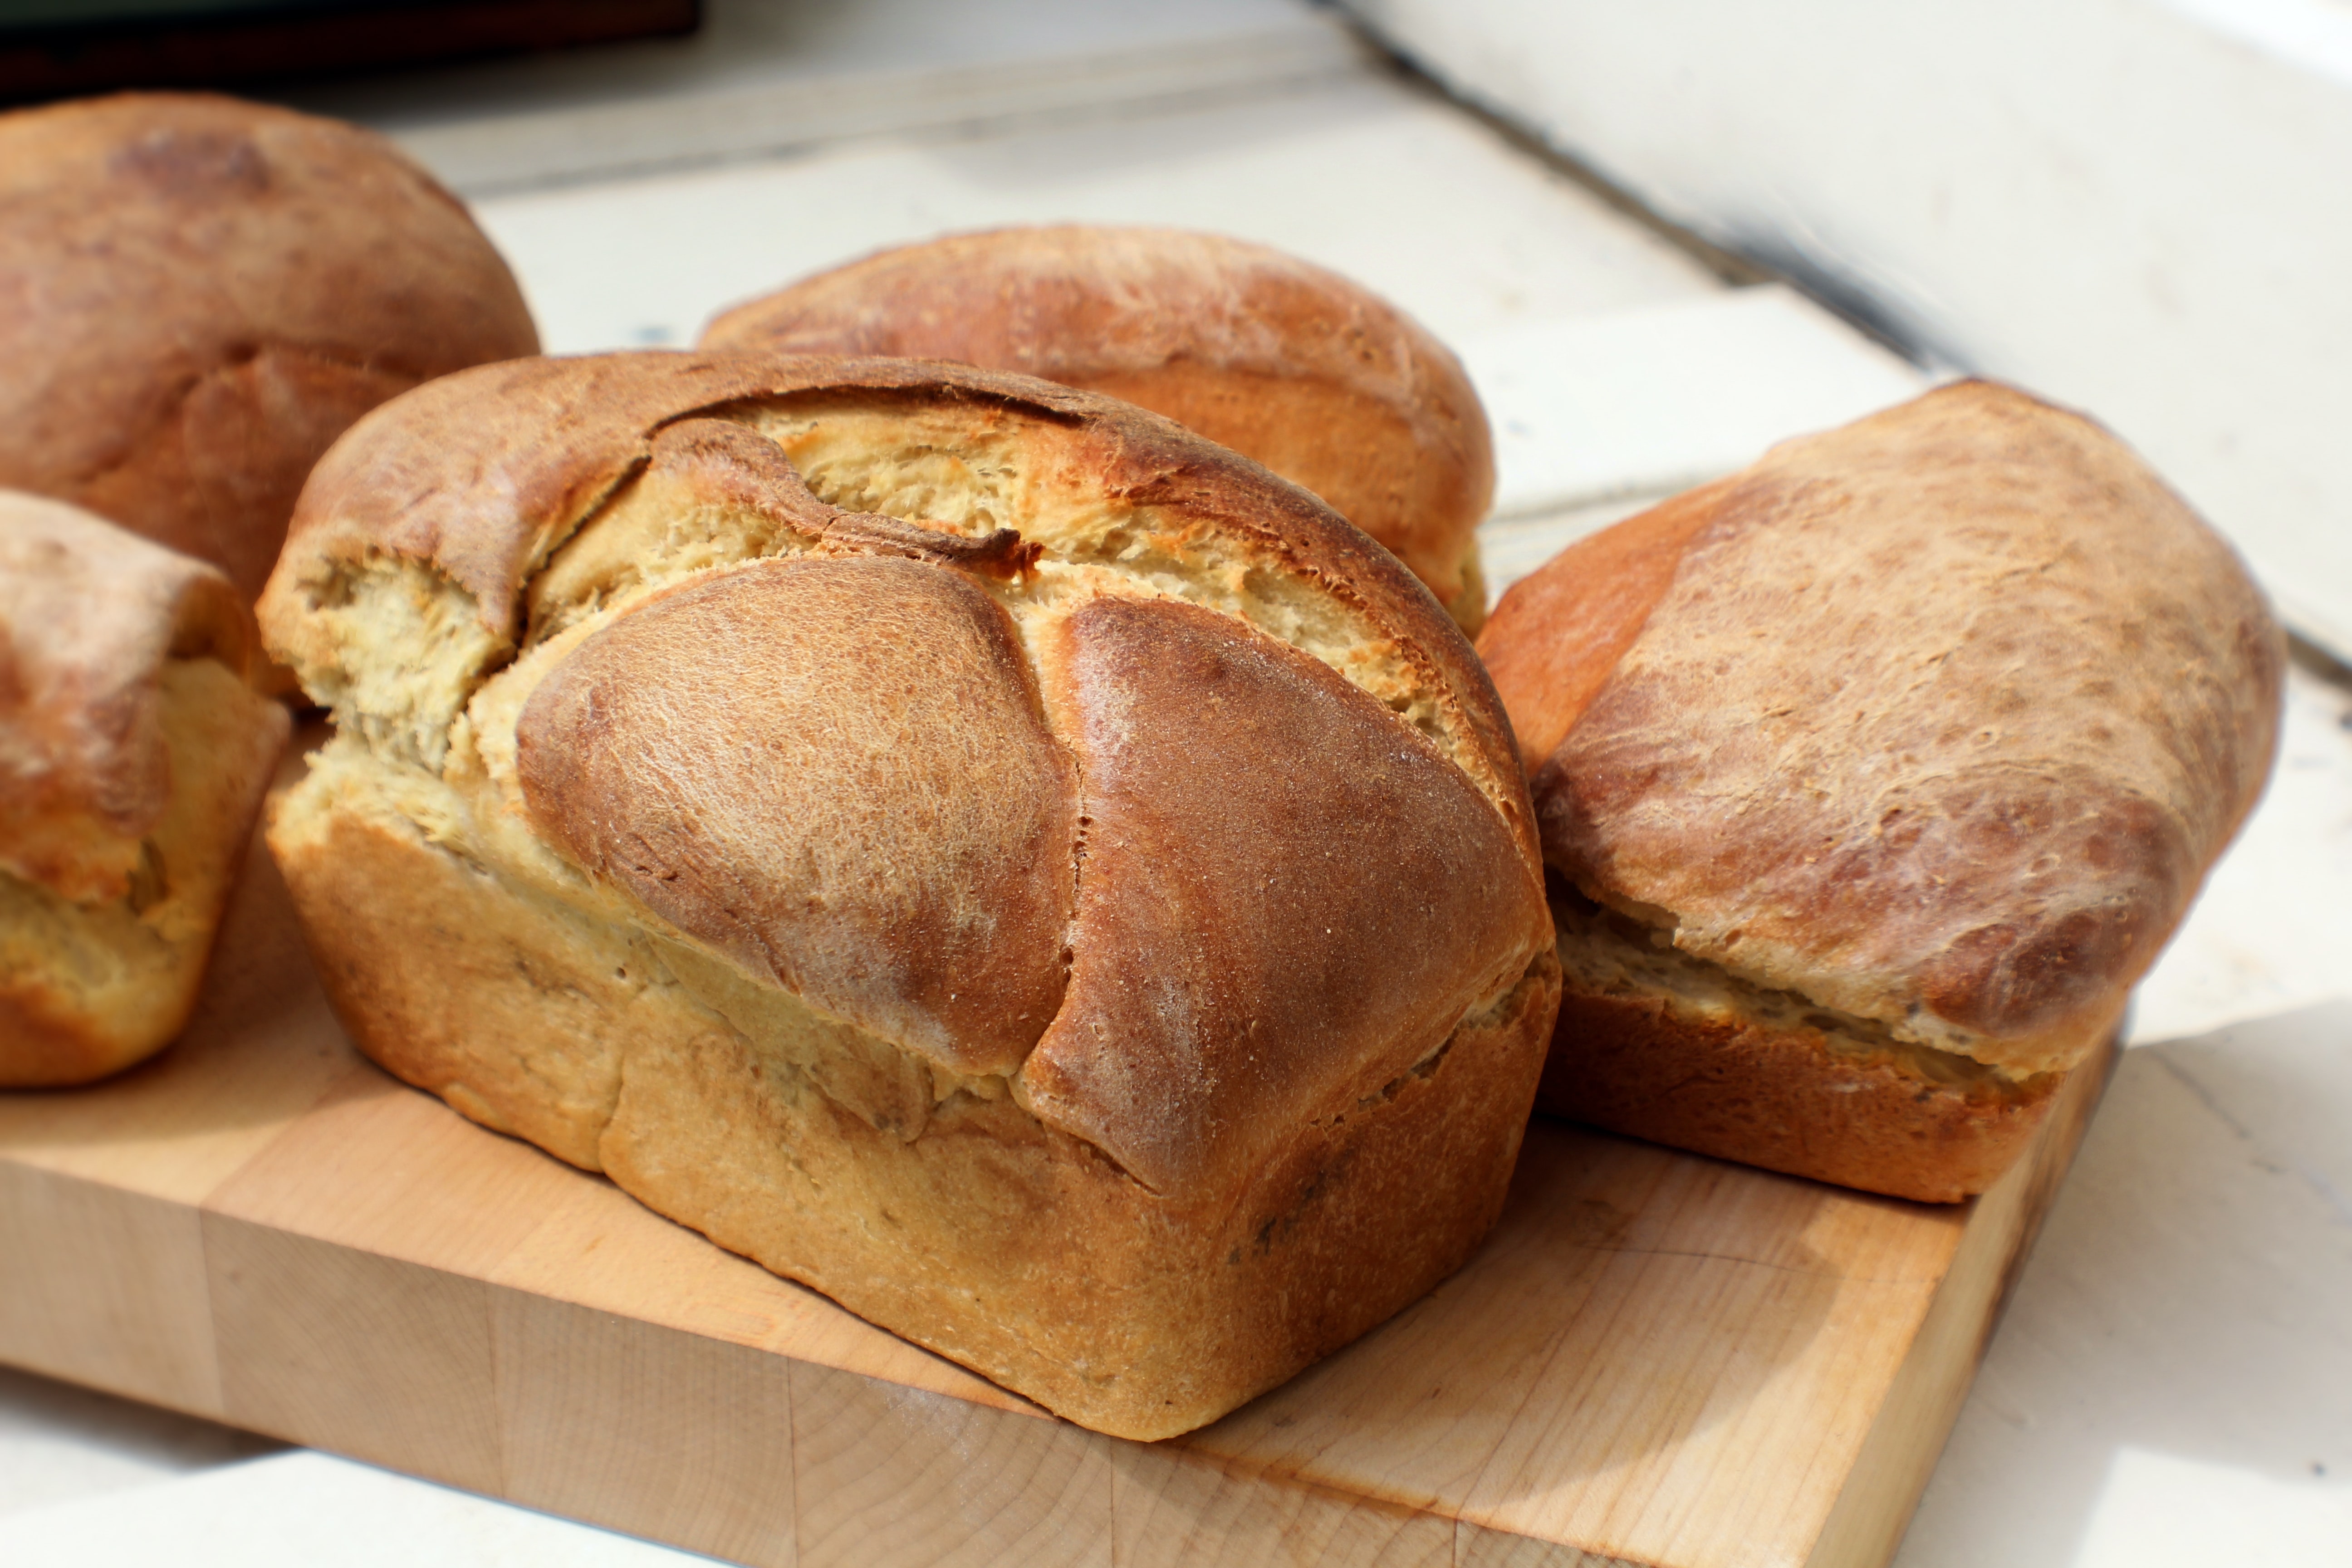 Chléb z domácí pekárny je typický svým tvarem